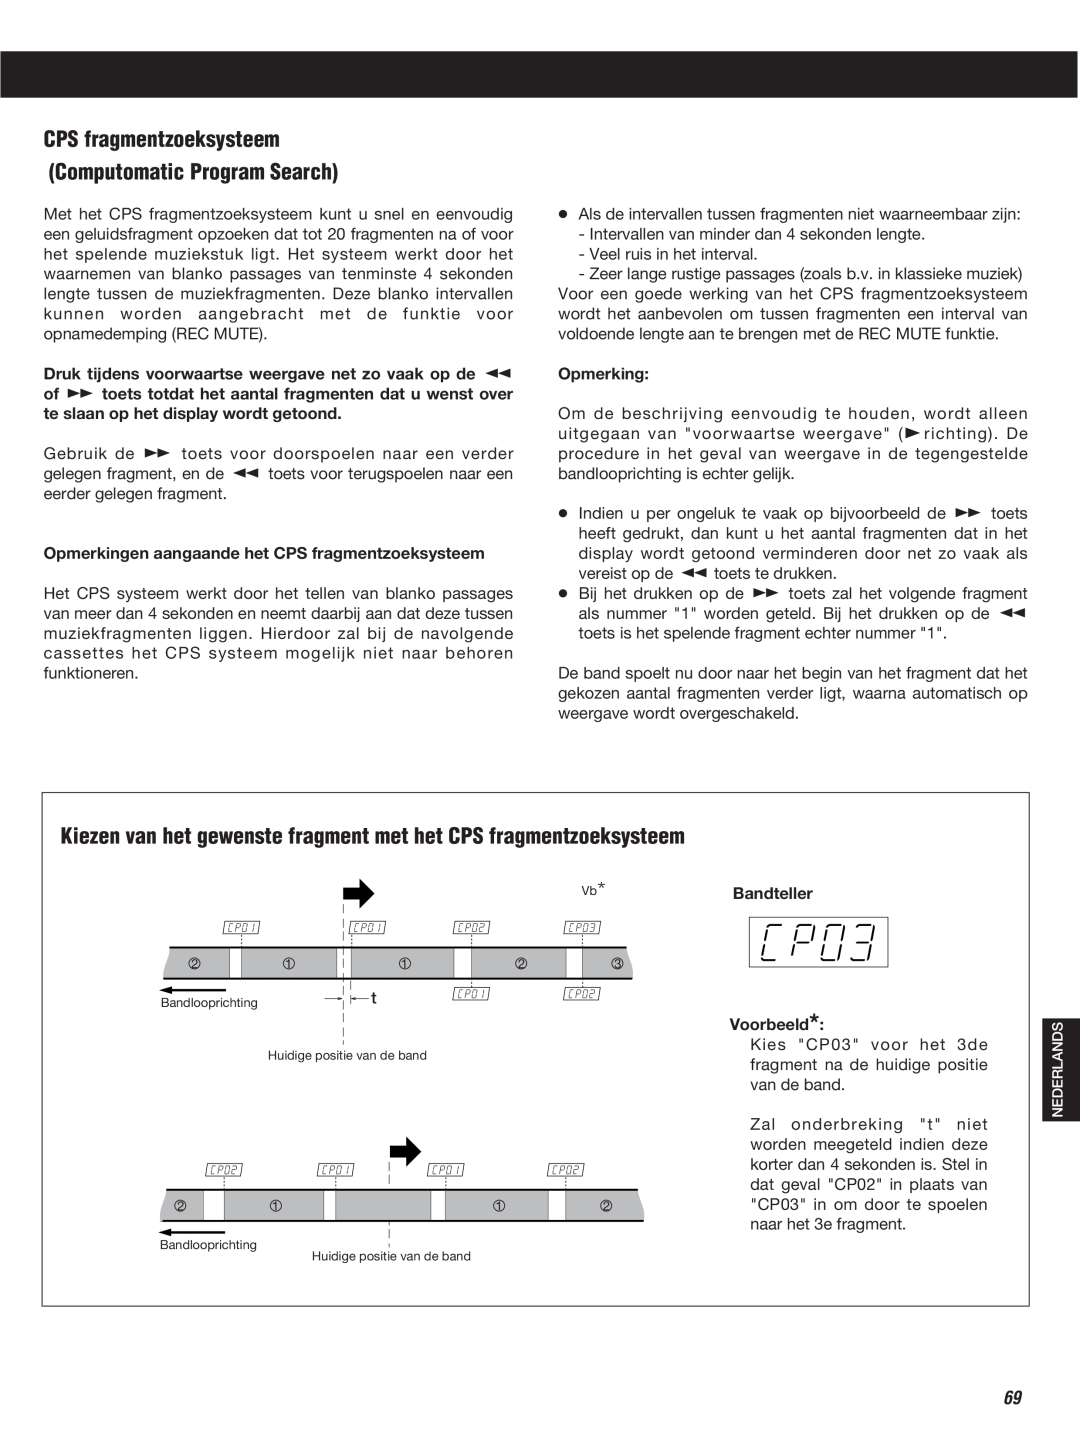 Teac W-860R Computomatic Program Search, Opmerkingen aangaande het CPS fragmentzoeksysteem, Bandteller Voorbeeld 